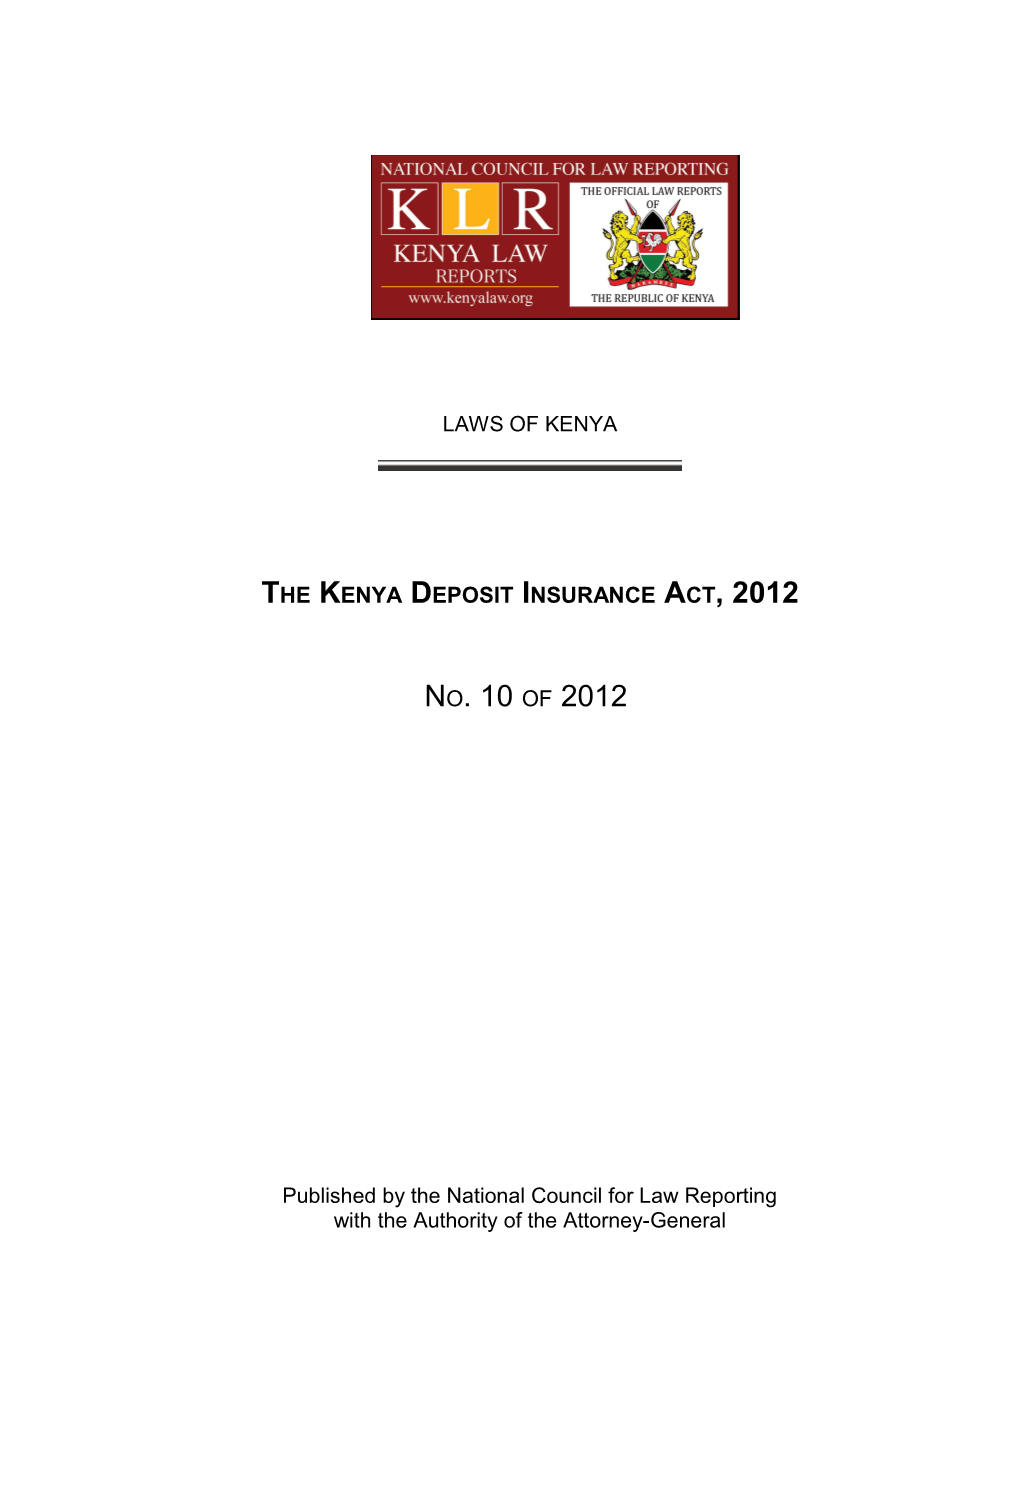 The Kenya Deposit Insurance Act, 2012